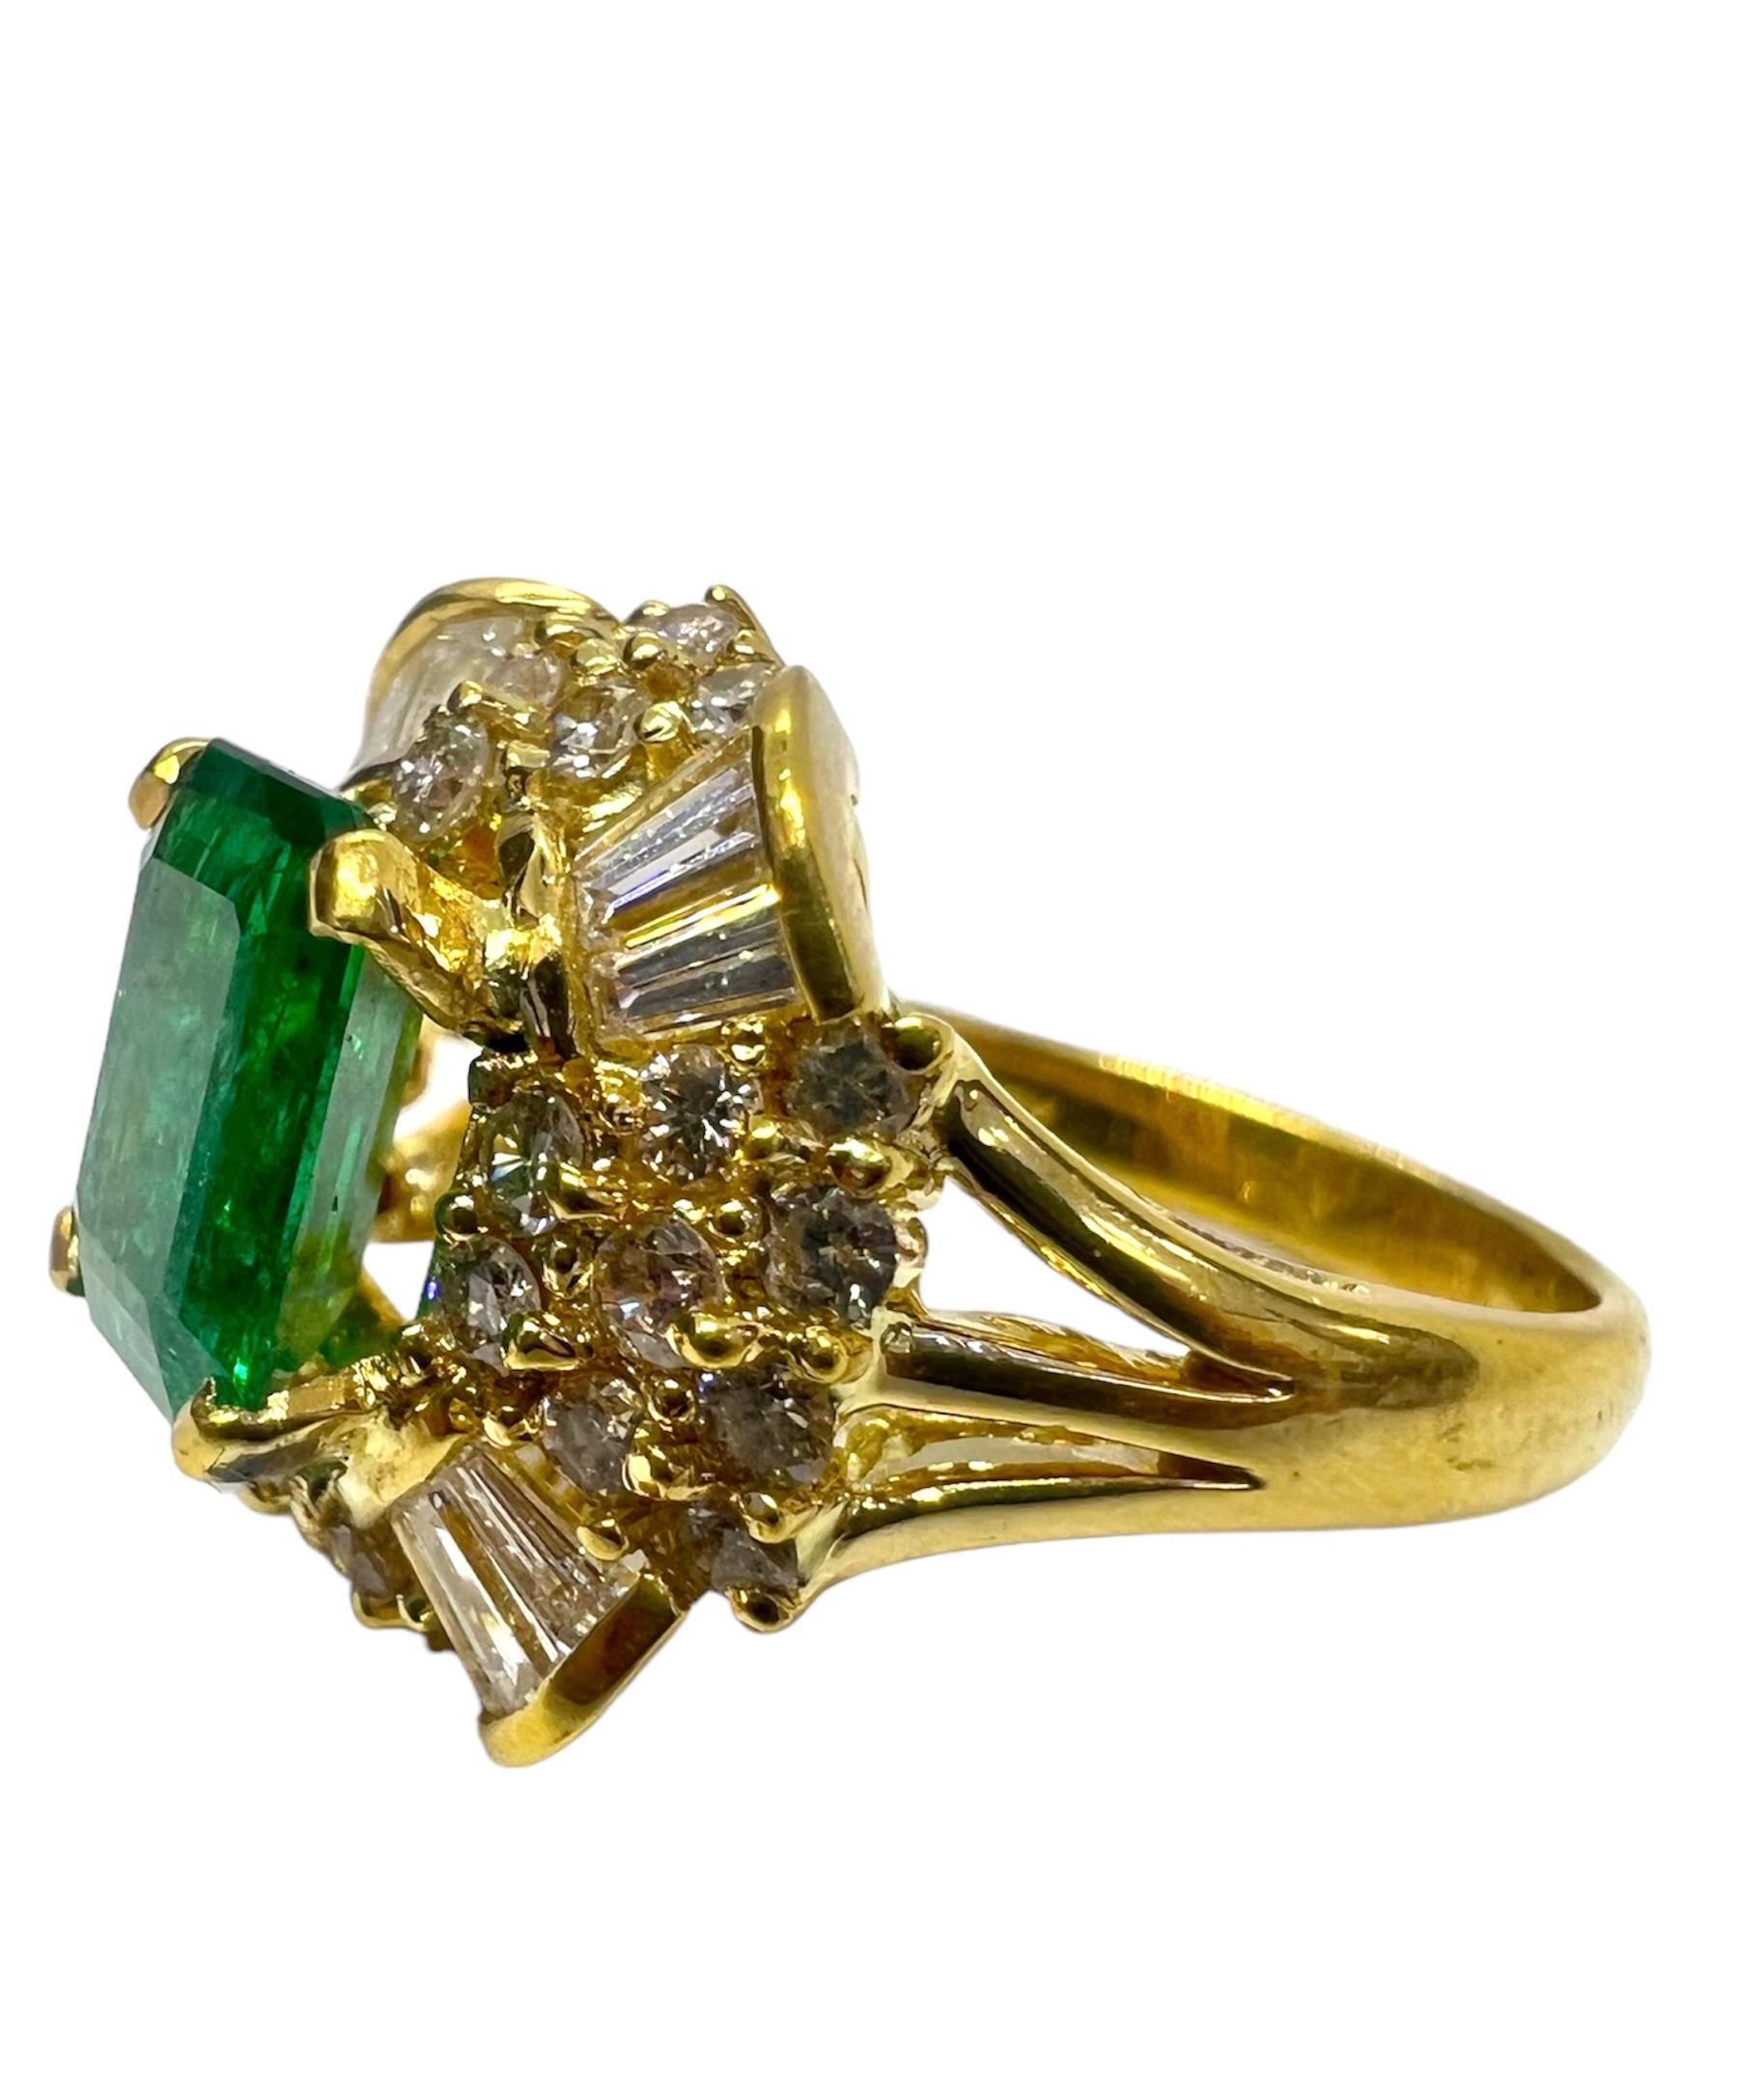 Ring aus 18 Karat Gelbgold mit Smaragdstein und Diamanten.

Sophia D von Joseph Dardashti LTD ist seit 35 Jahren weltweit bekannt und lässt sich vom klassischen Art-Déco-Design inspirieren, das mit modernen Fertigungstechniken verschmilzt.